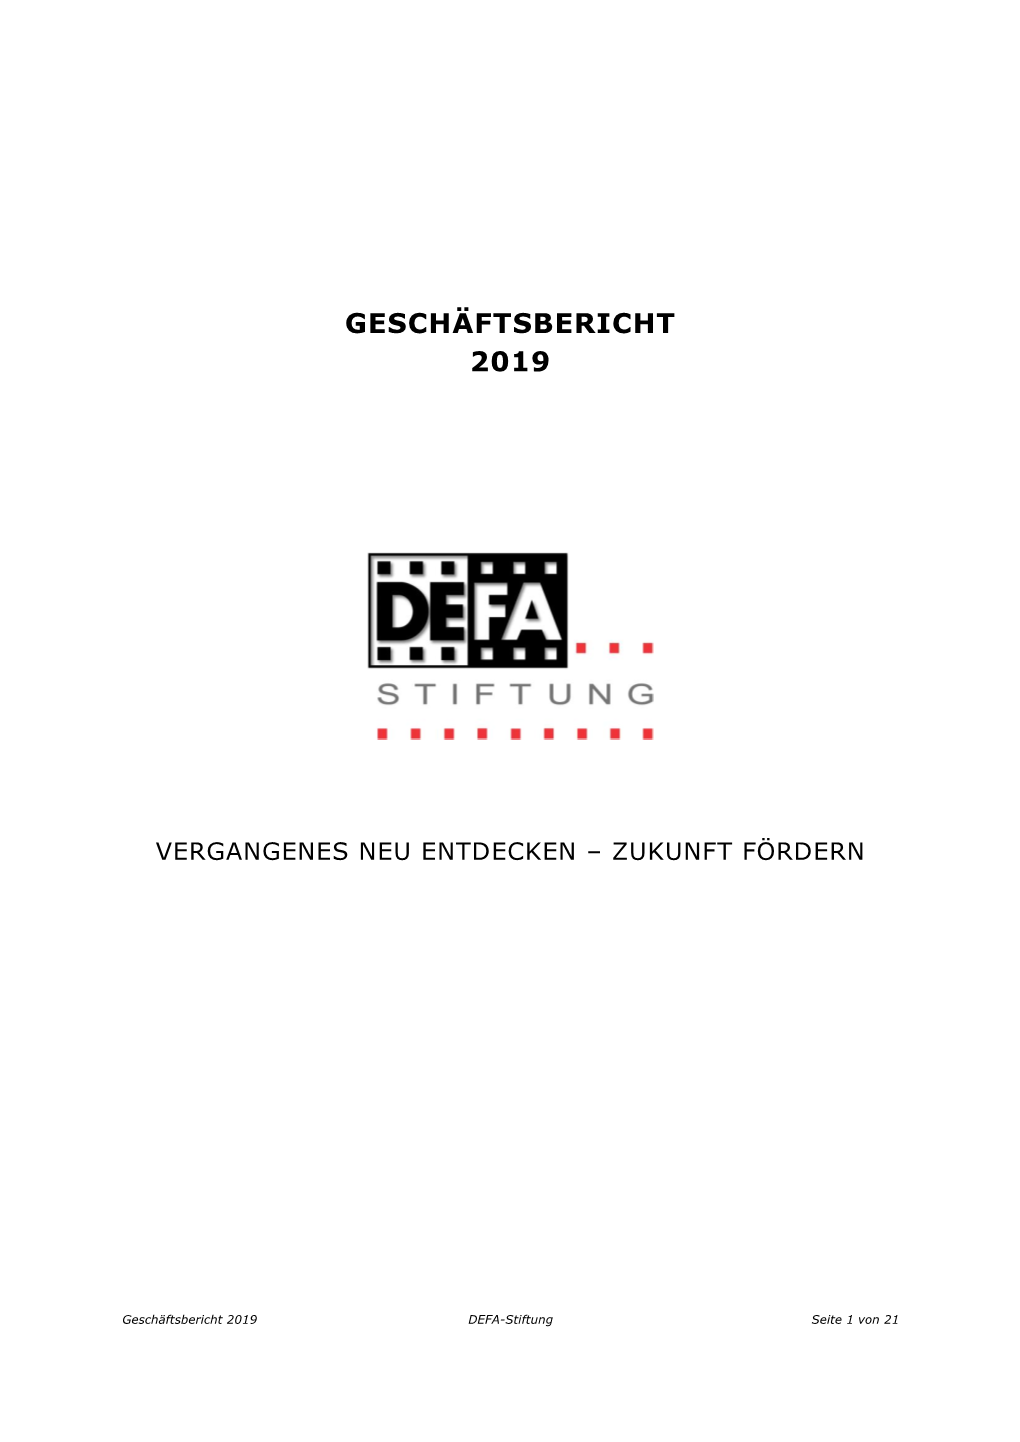 Jahresbericht Der DEFA-Stiftung 2019